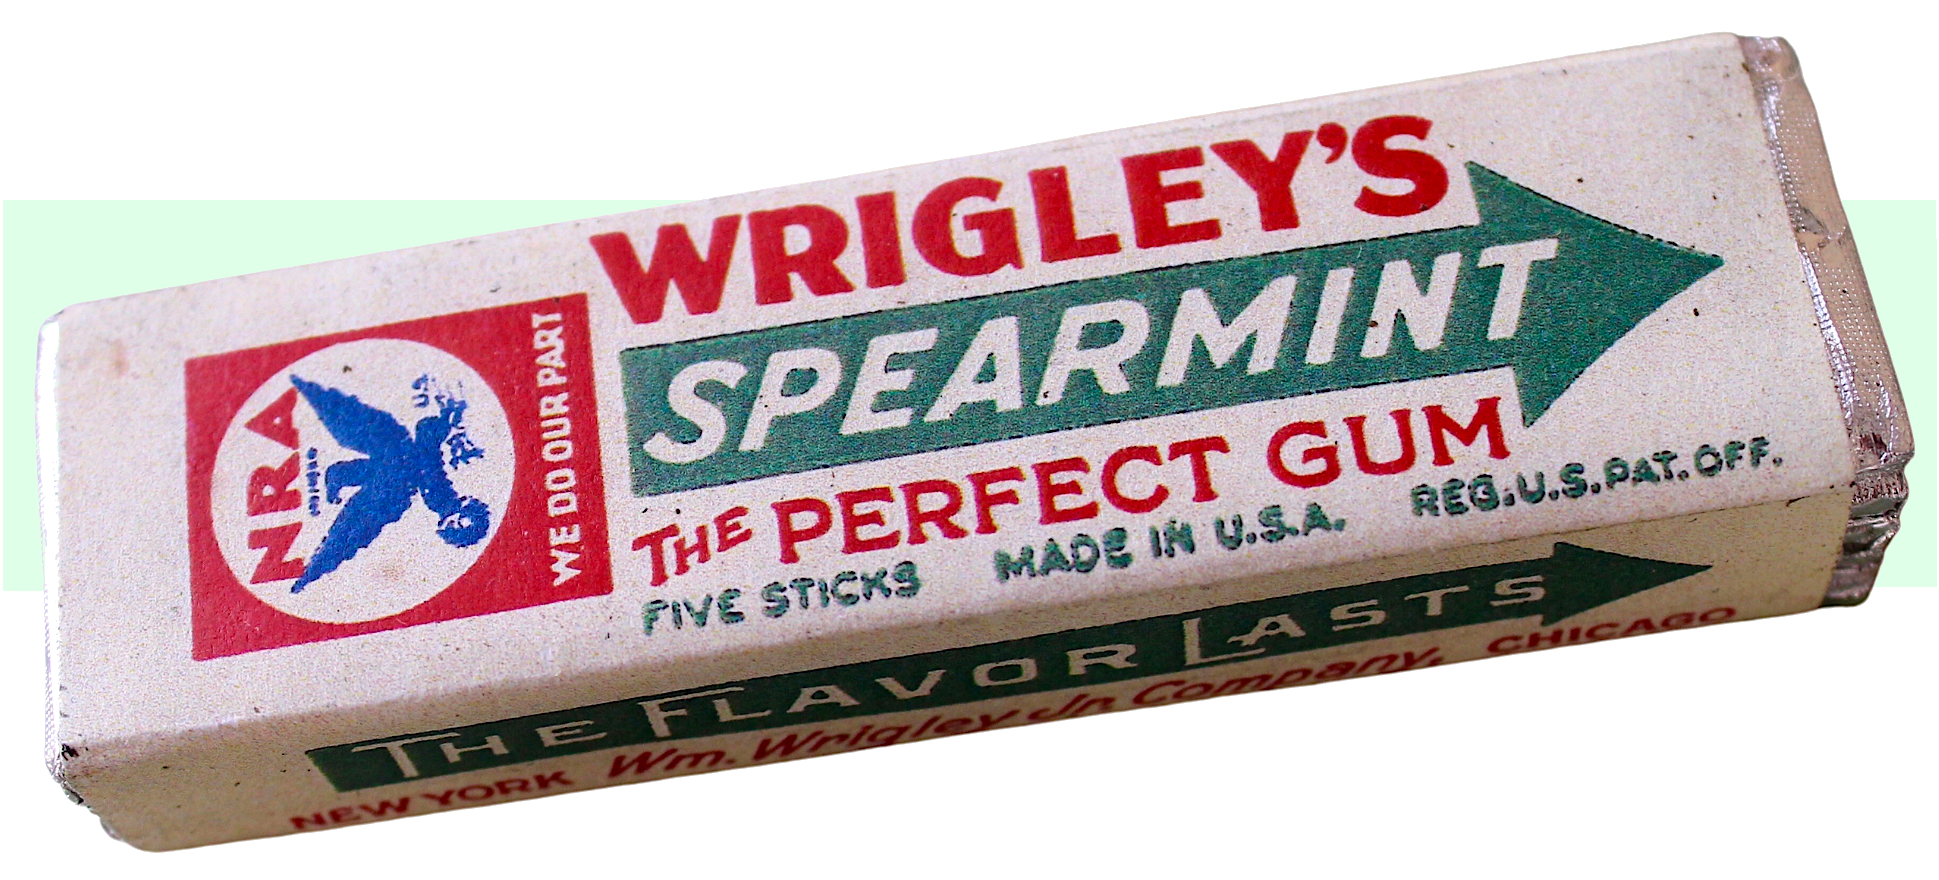 wrigleys gum logo